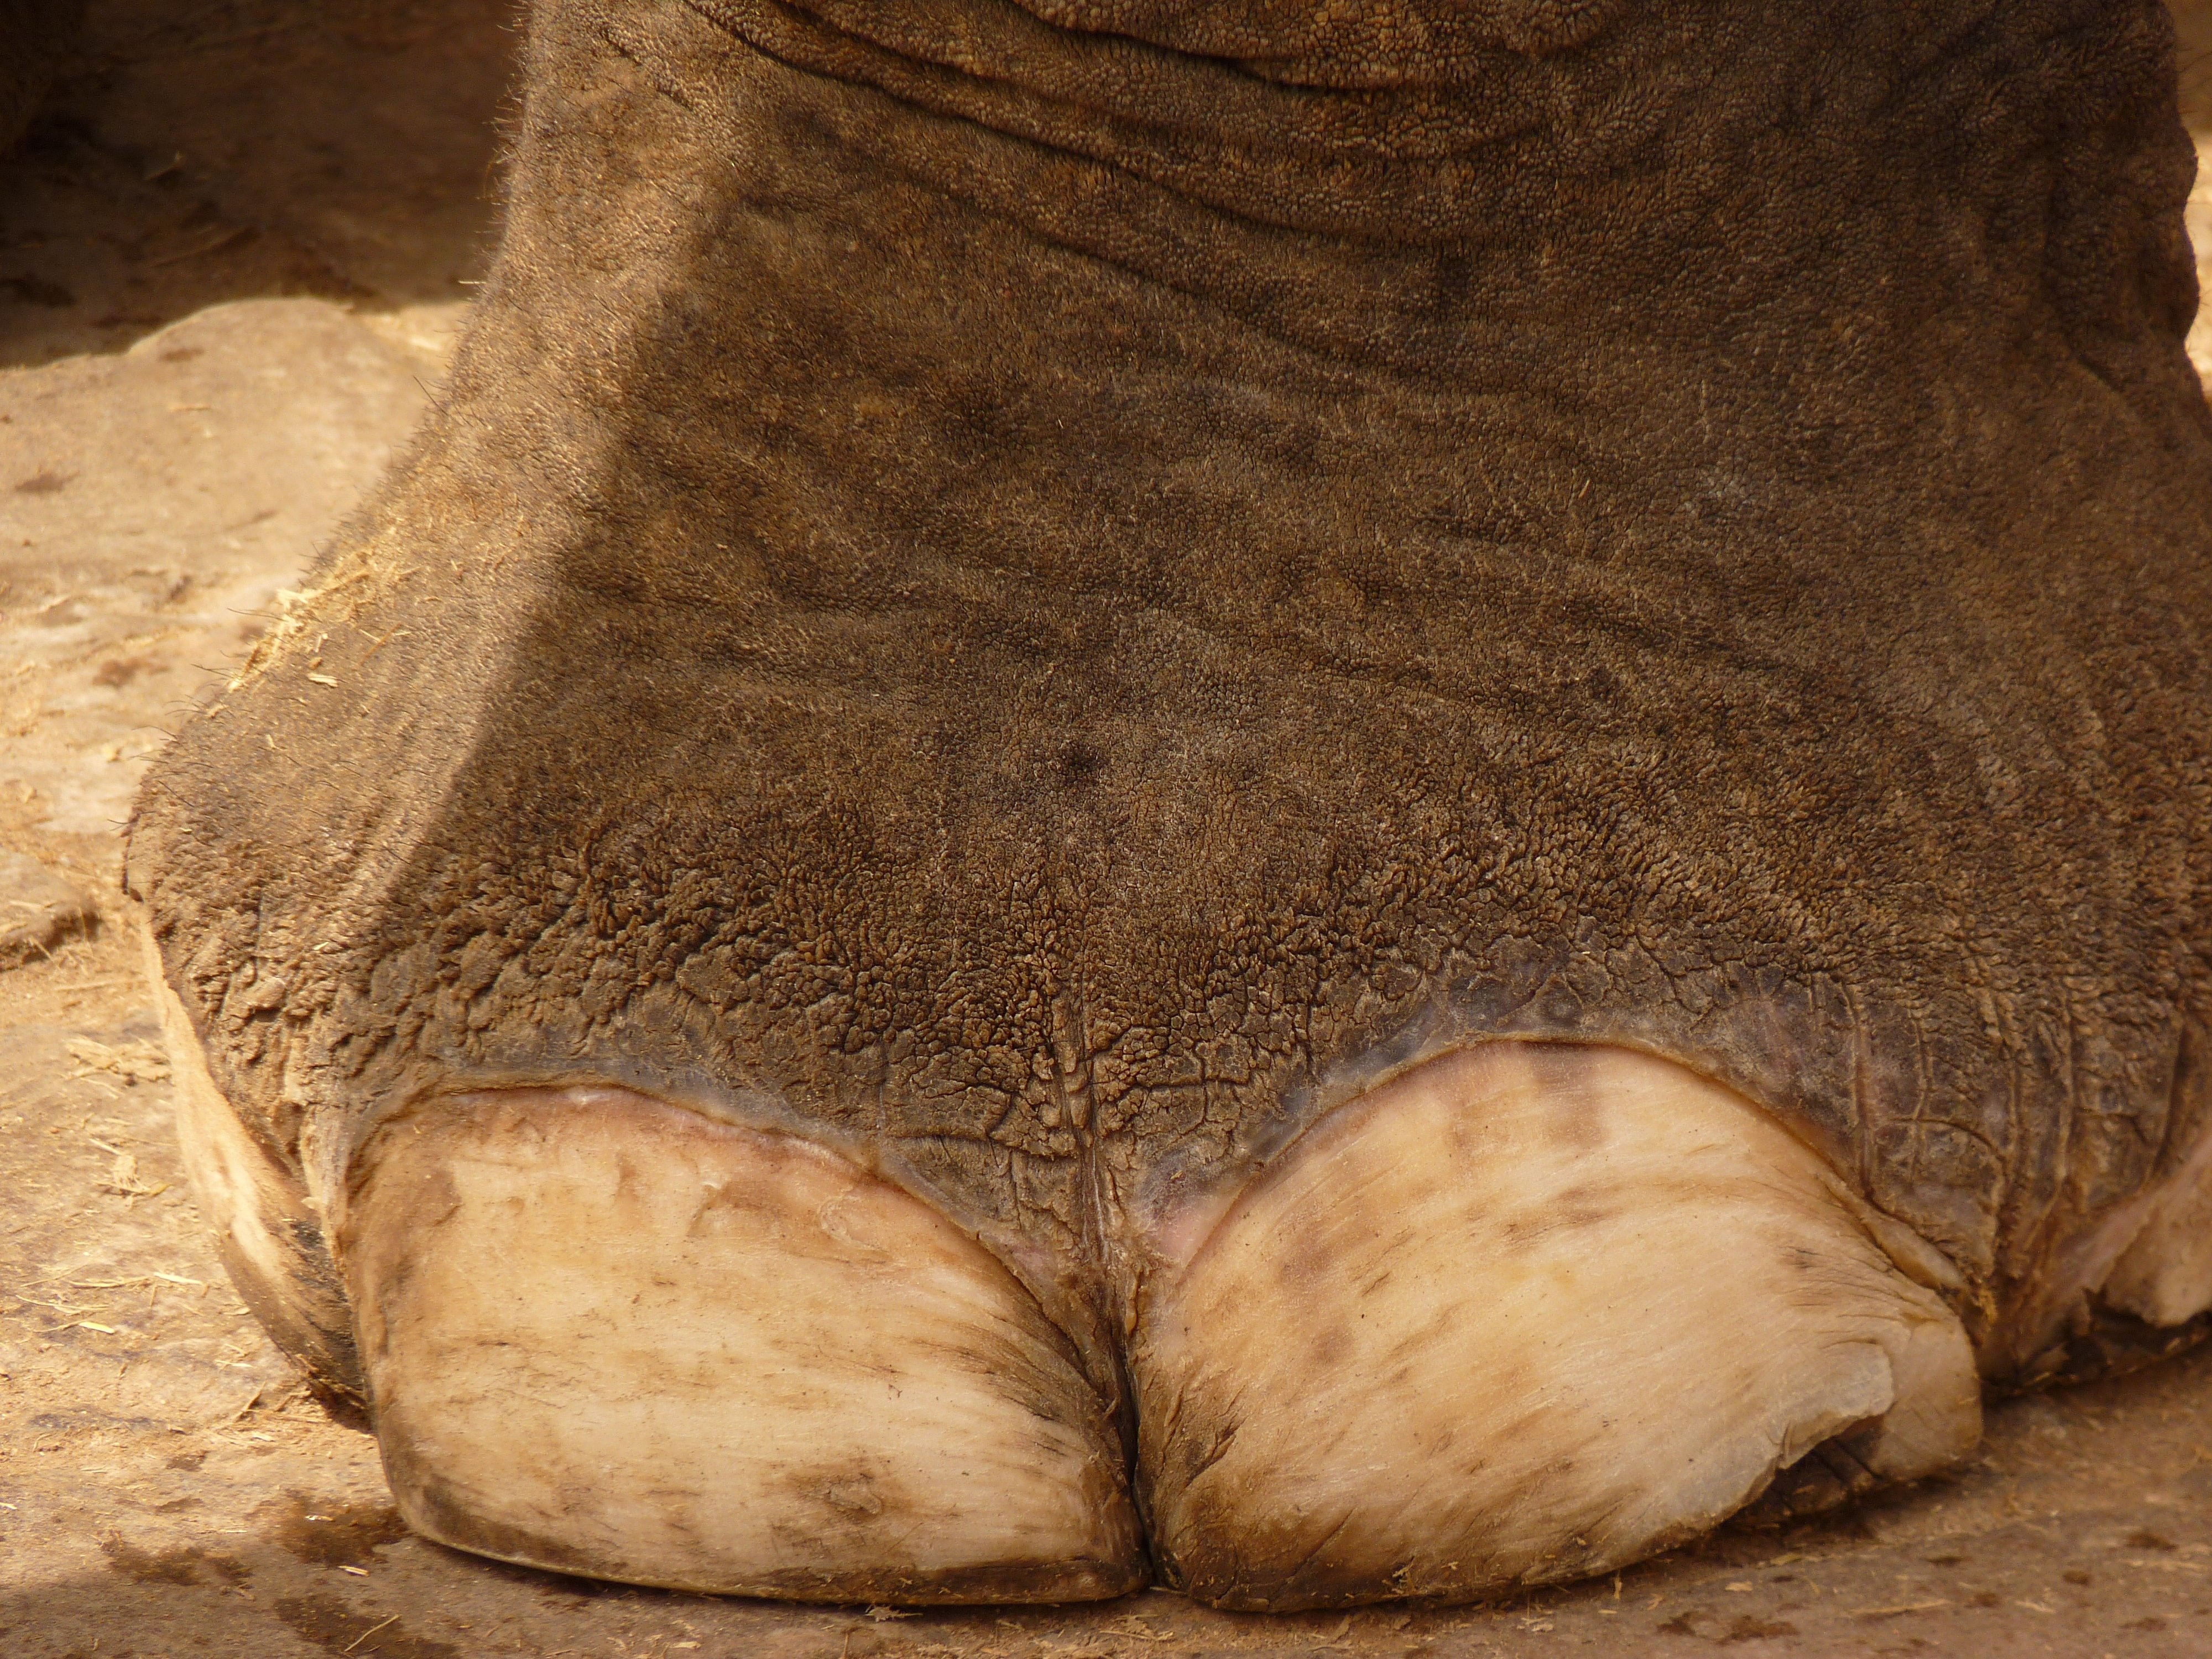 gray elephant foot